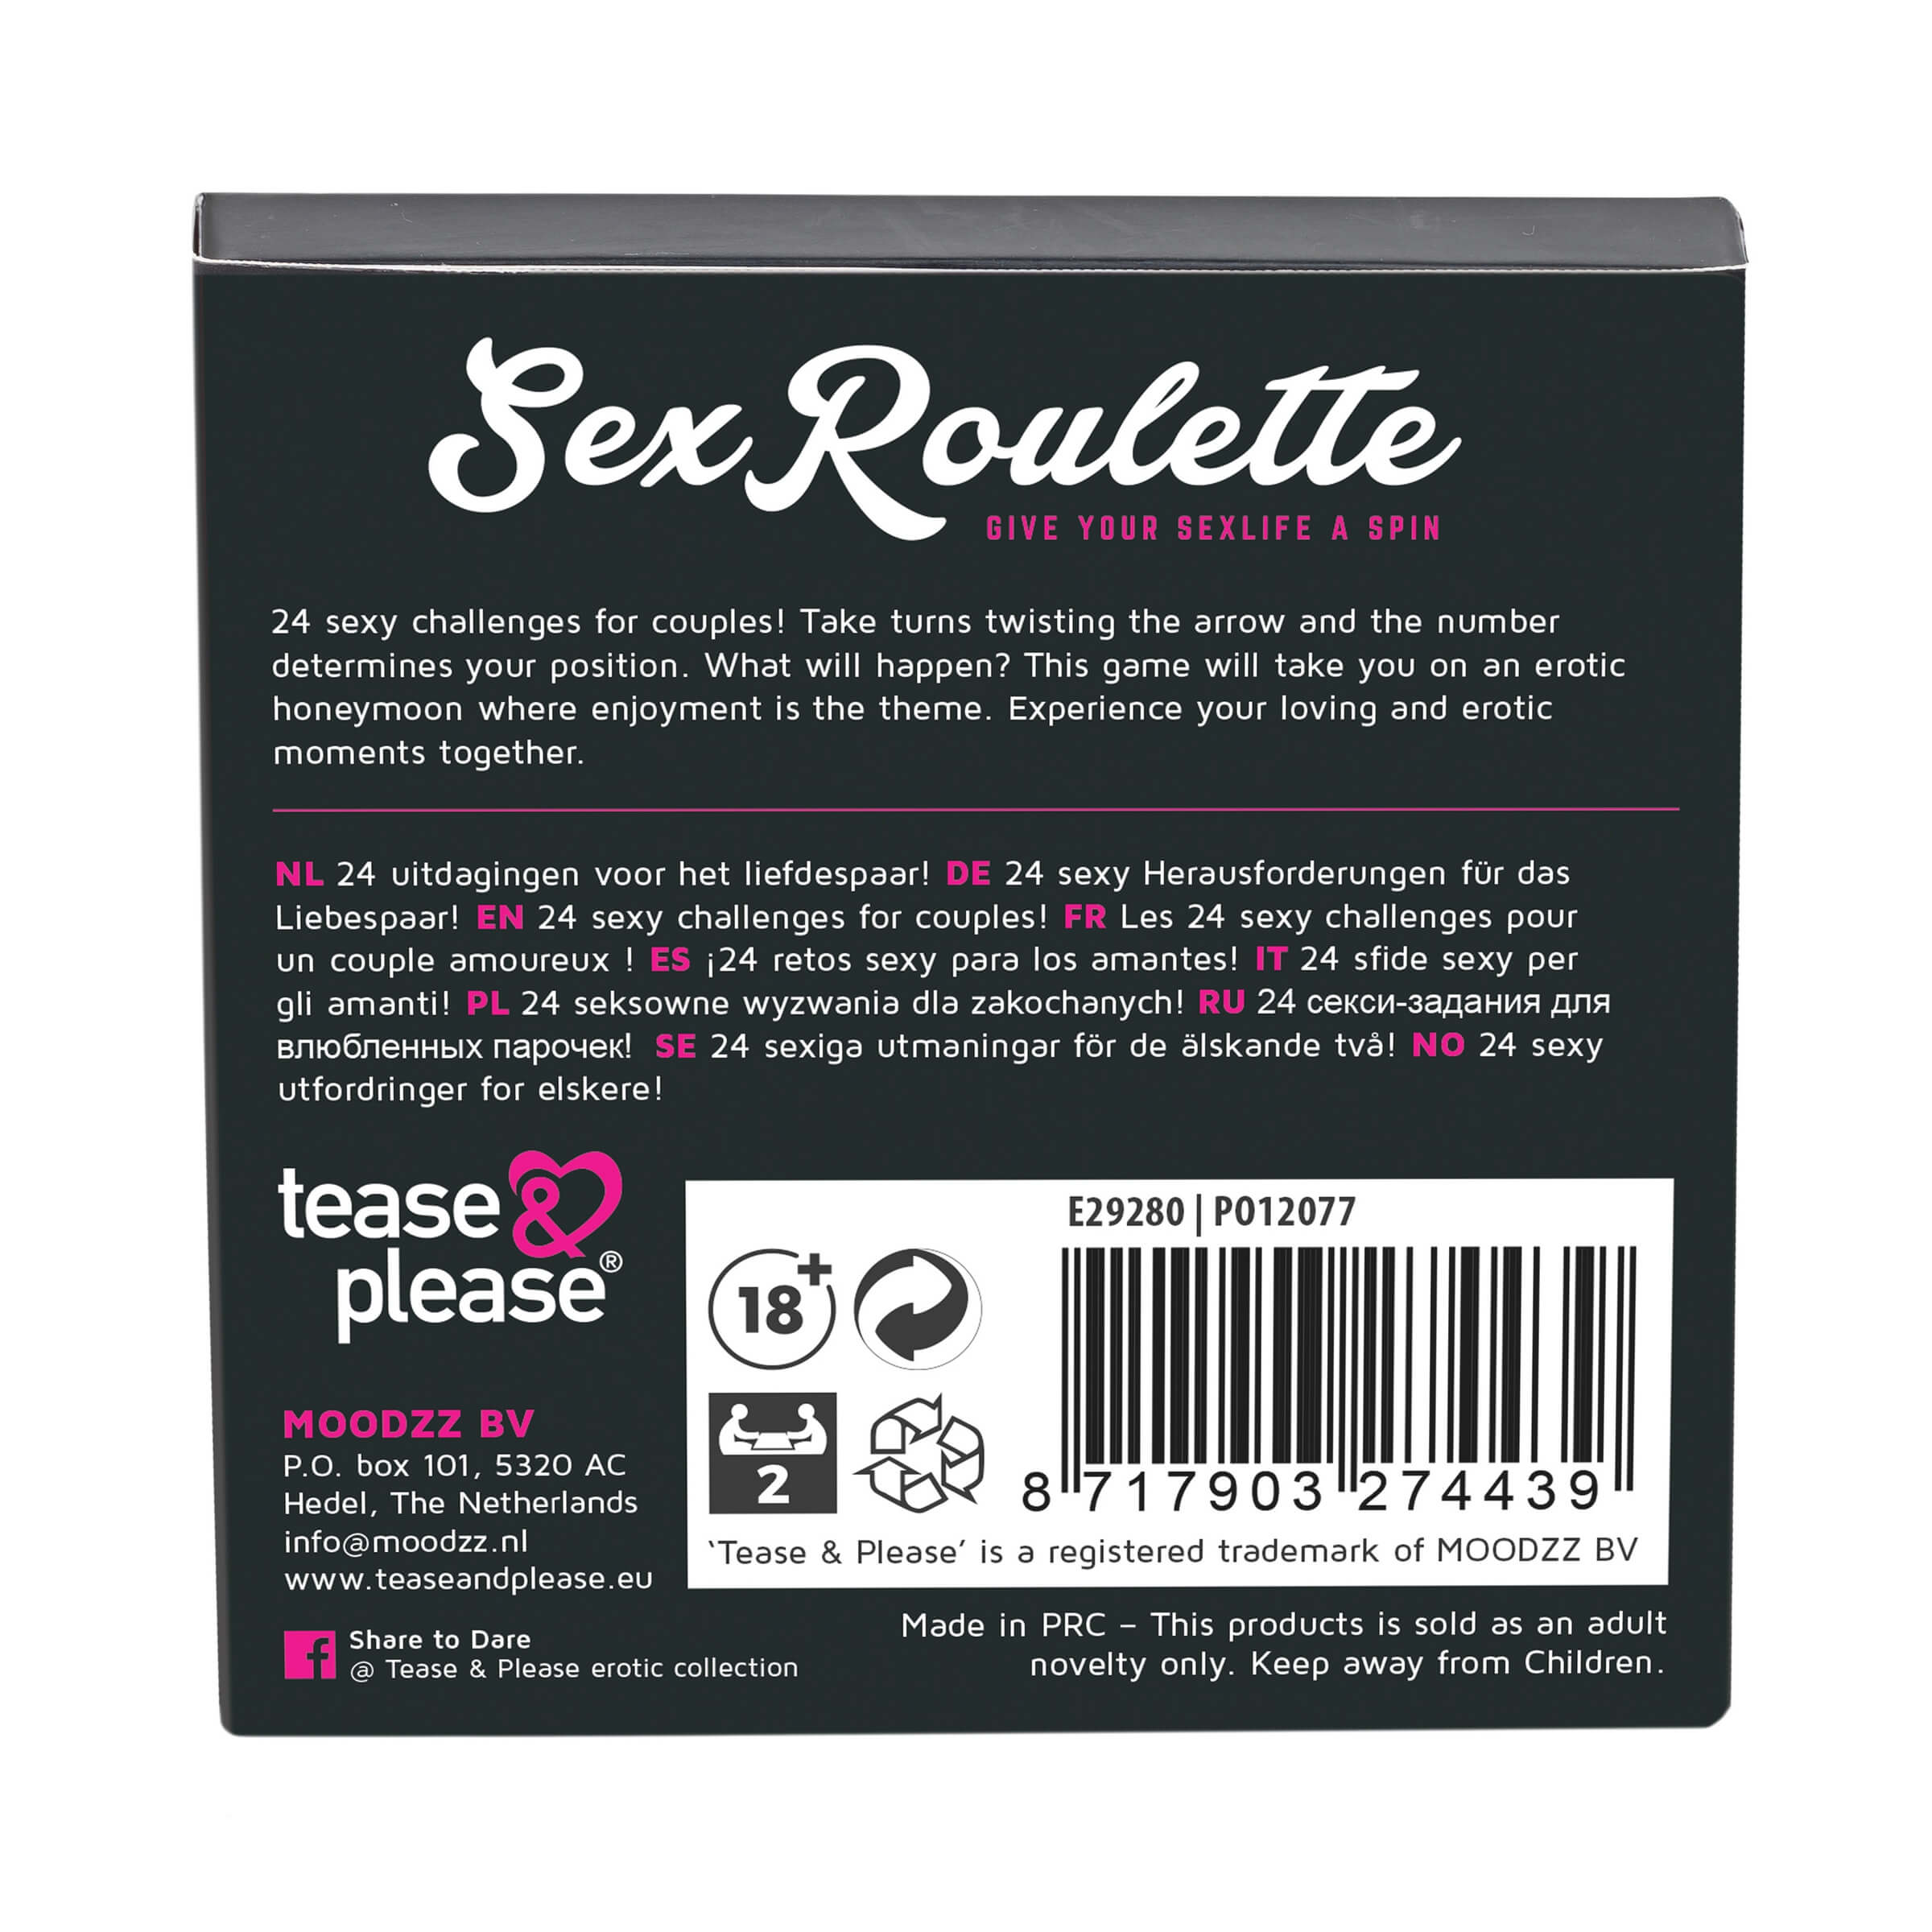 Sex Roulette Love & Married - szex társasjáték (10 nyelven) Erotika pároknak kép